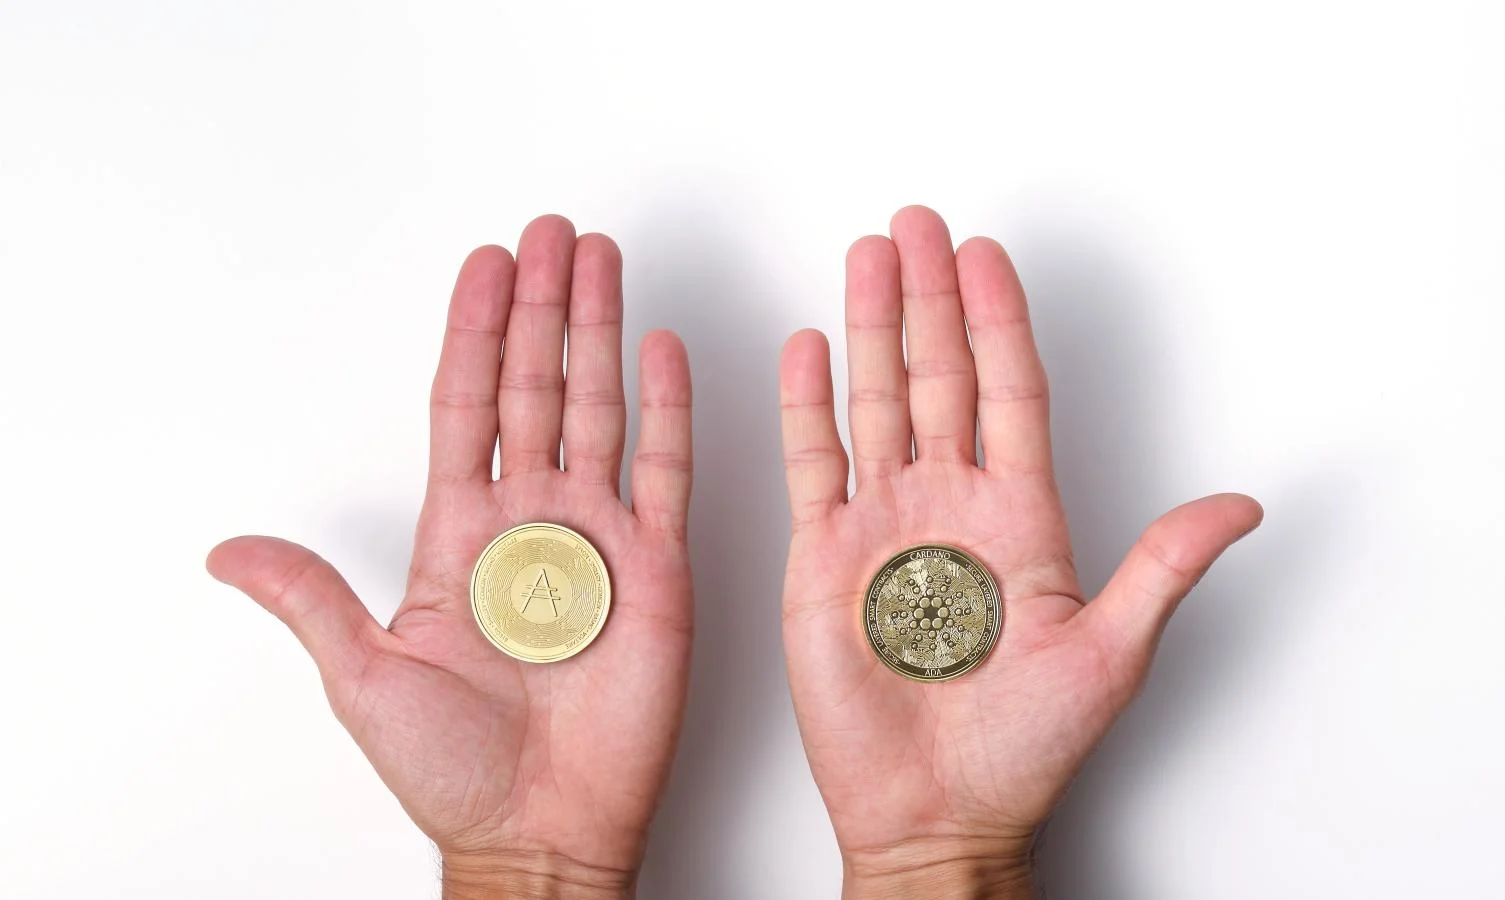  卡爾達諾加密貨幣在兩個張開的手掌上 